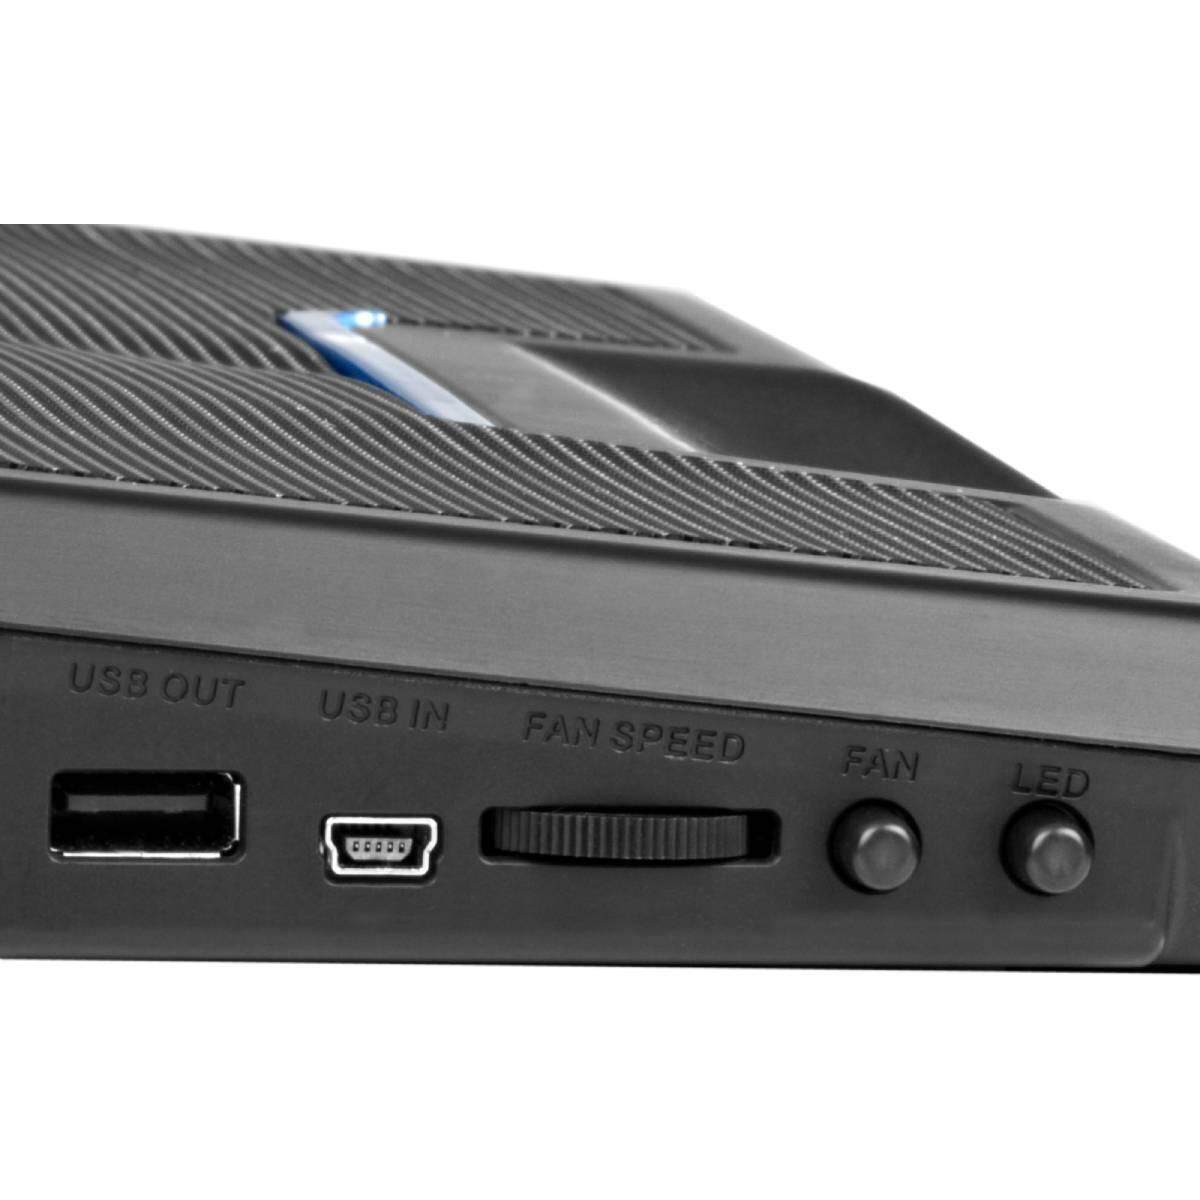 Cooler Master Notepal X3 200mm Silent Adjustable Blue LED Fan Ergonomic Mesh USB 2.0 Gaming Notebook Cooler for up to 17